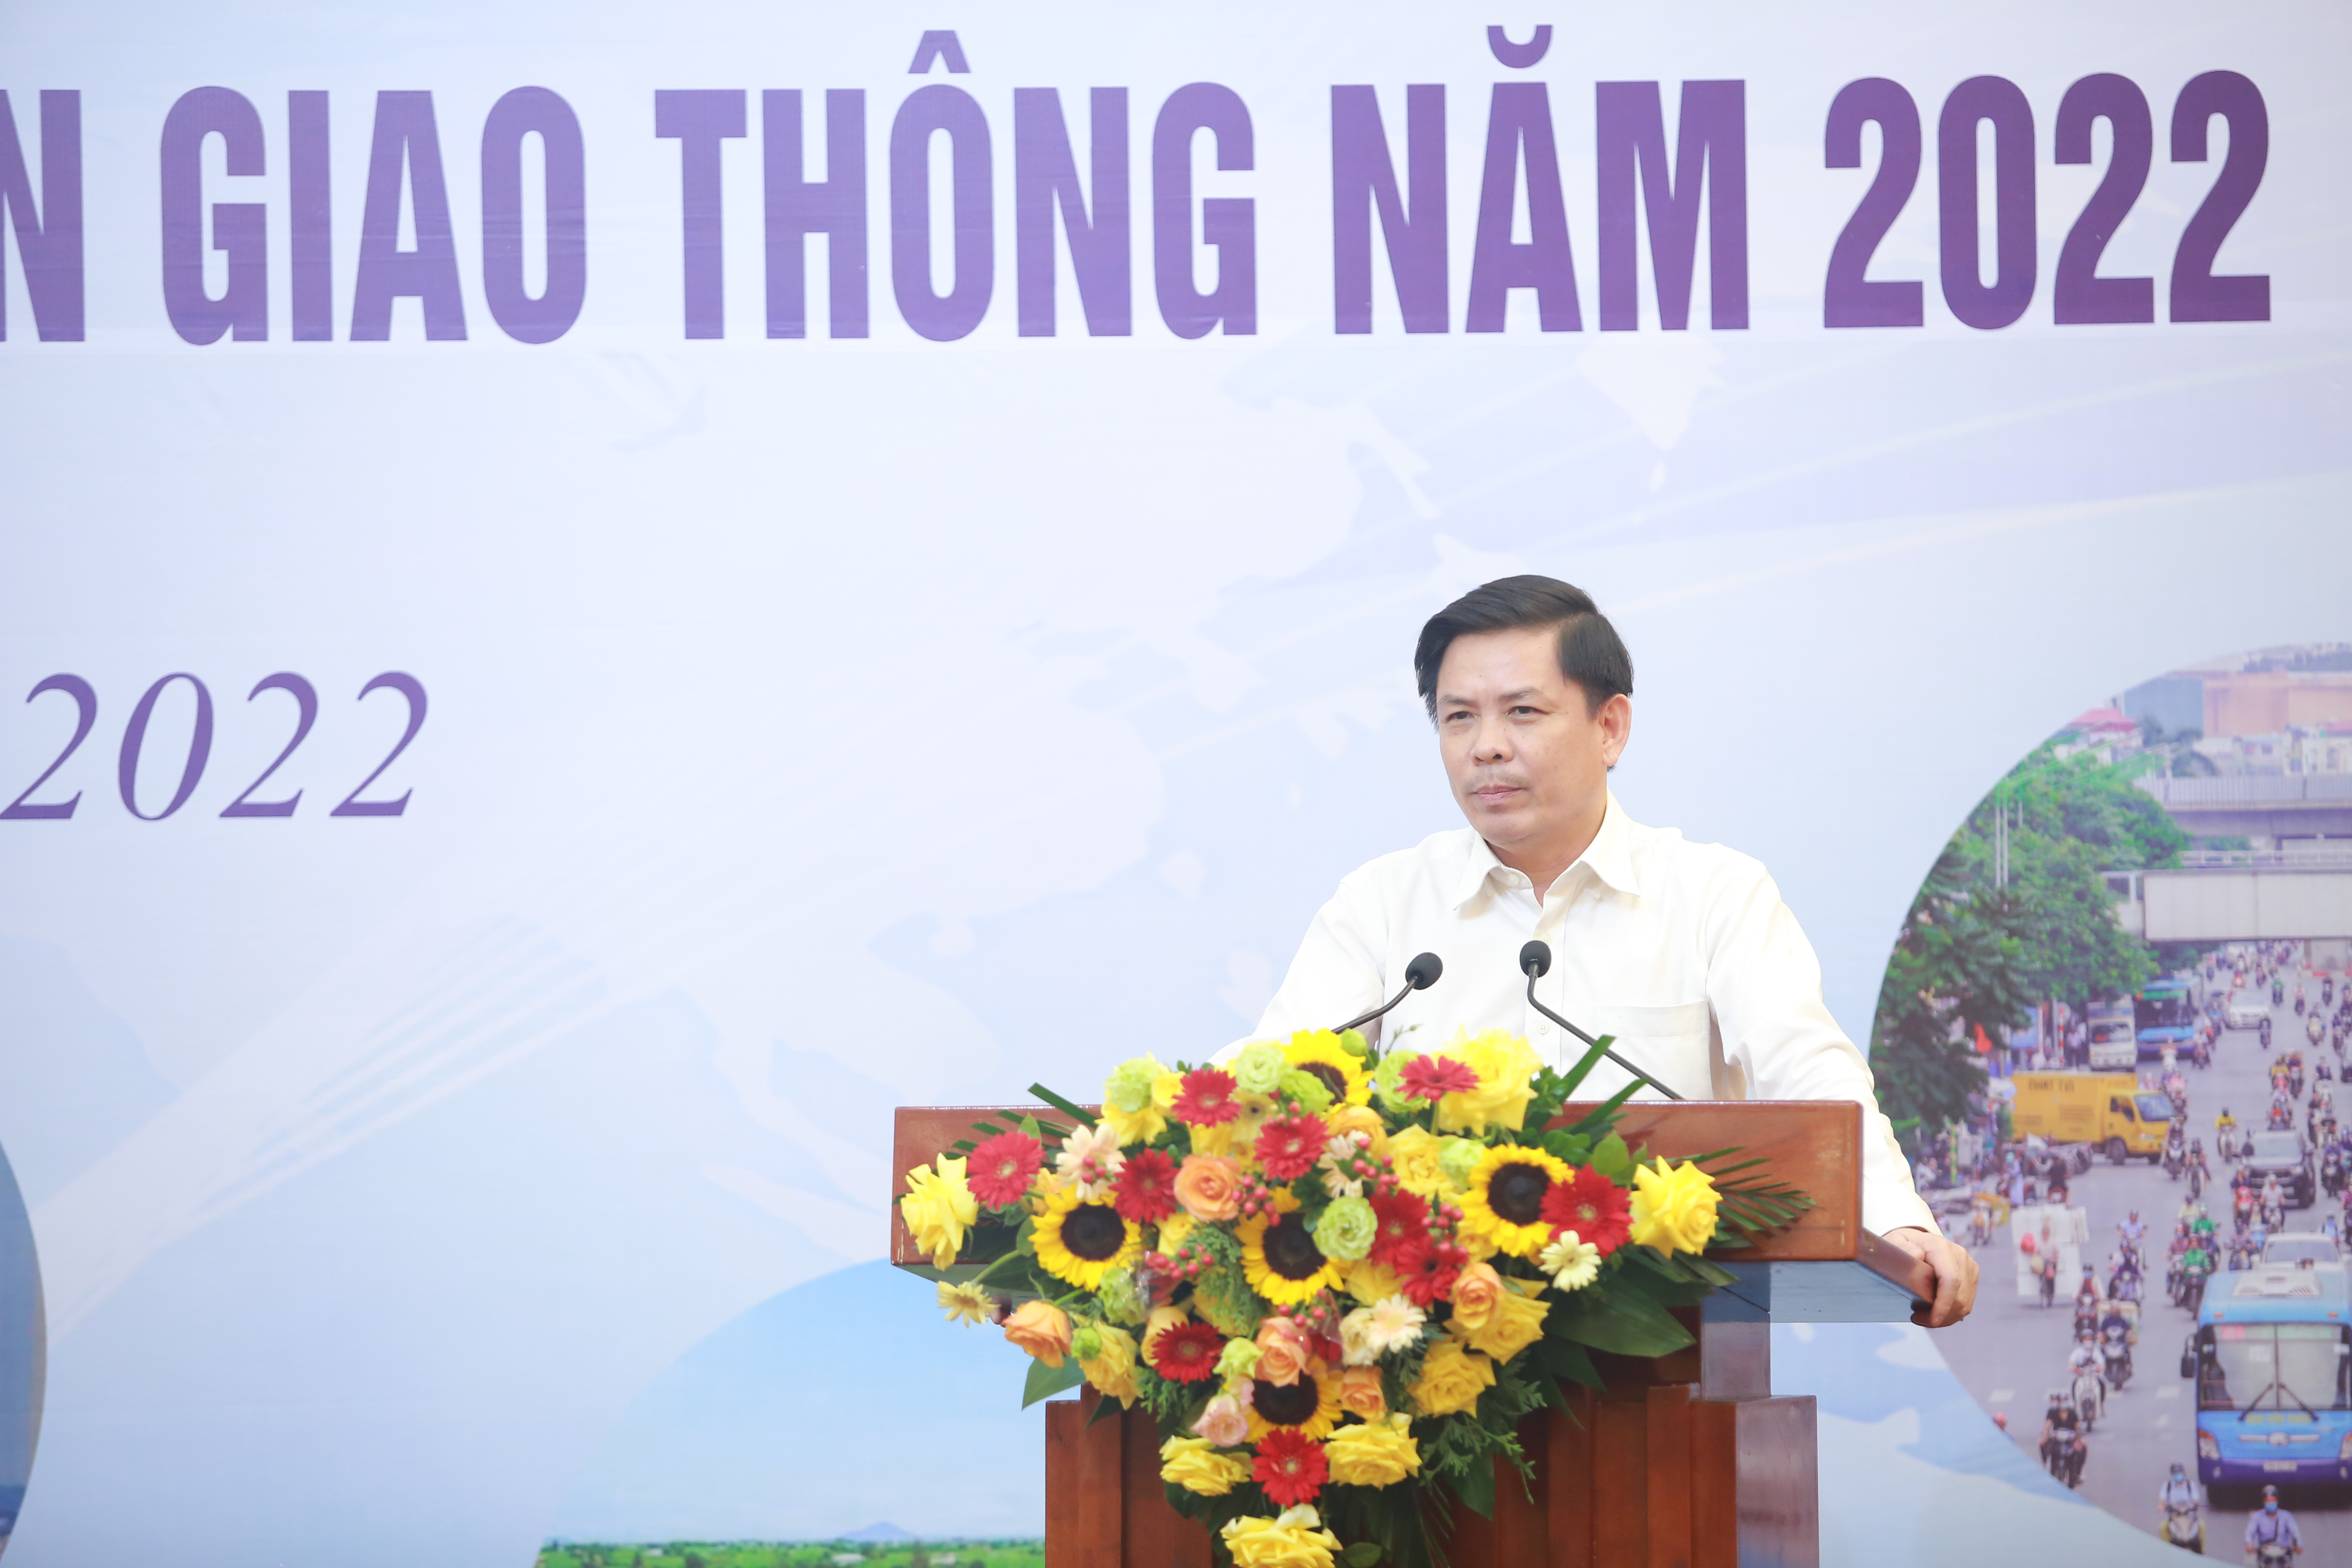 Bộ trưởng Bộ GTVT Nguyễn Văn Thể nhấn mạnh: 'Báo chí, truyền thông có vai trò đặc biệt quan trọng trong đời sống kinh tế, chính trị, văn hoá - xã hội của đất nước nói chung và trong công tác bảo đảm trật tự an toàn giao thông nói riêng'.